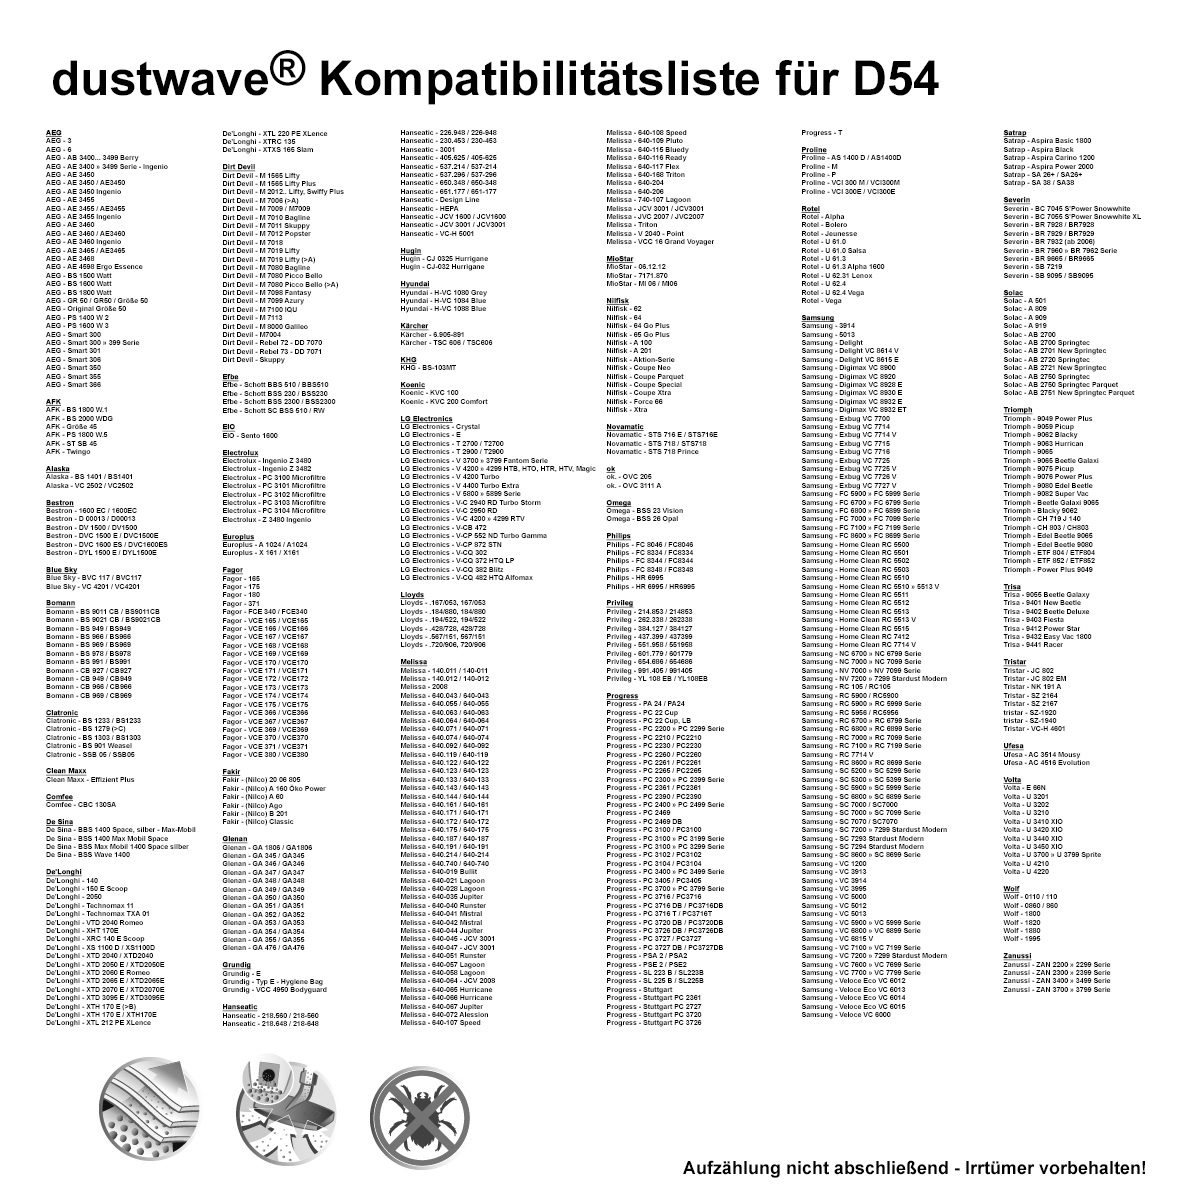 Dustwave® 10 Staubsaugerbeutel für Alaska VC 2502 / VC2502 - hocheffizient, mehrlagiges Mikrovlies mit Hygieneverschluss - Made in Germany